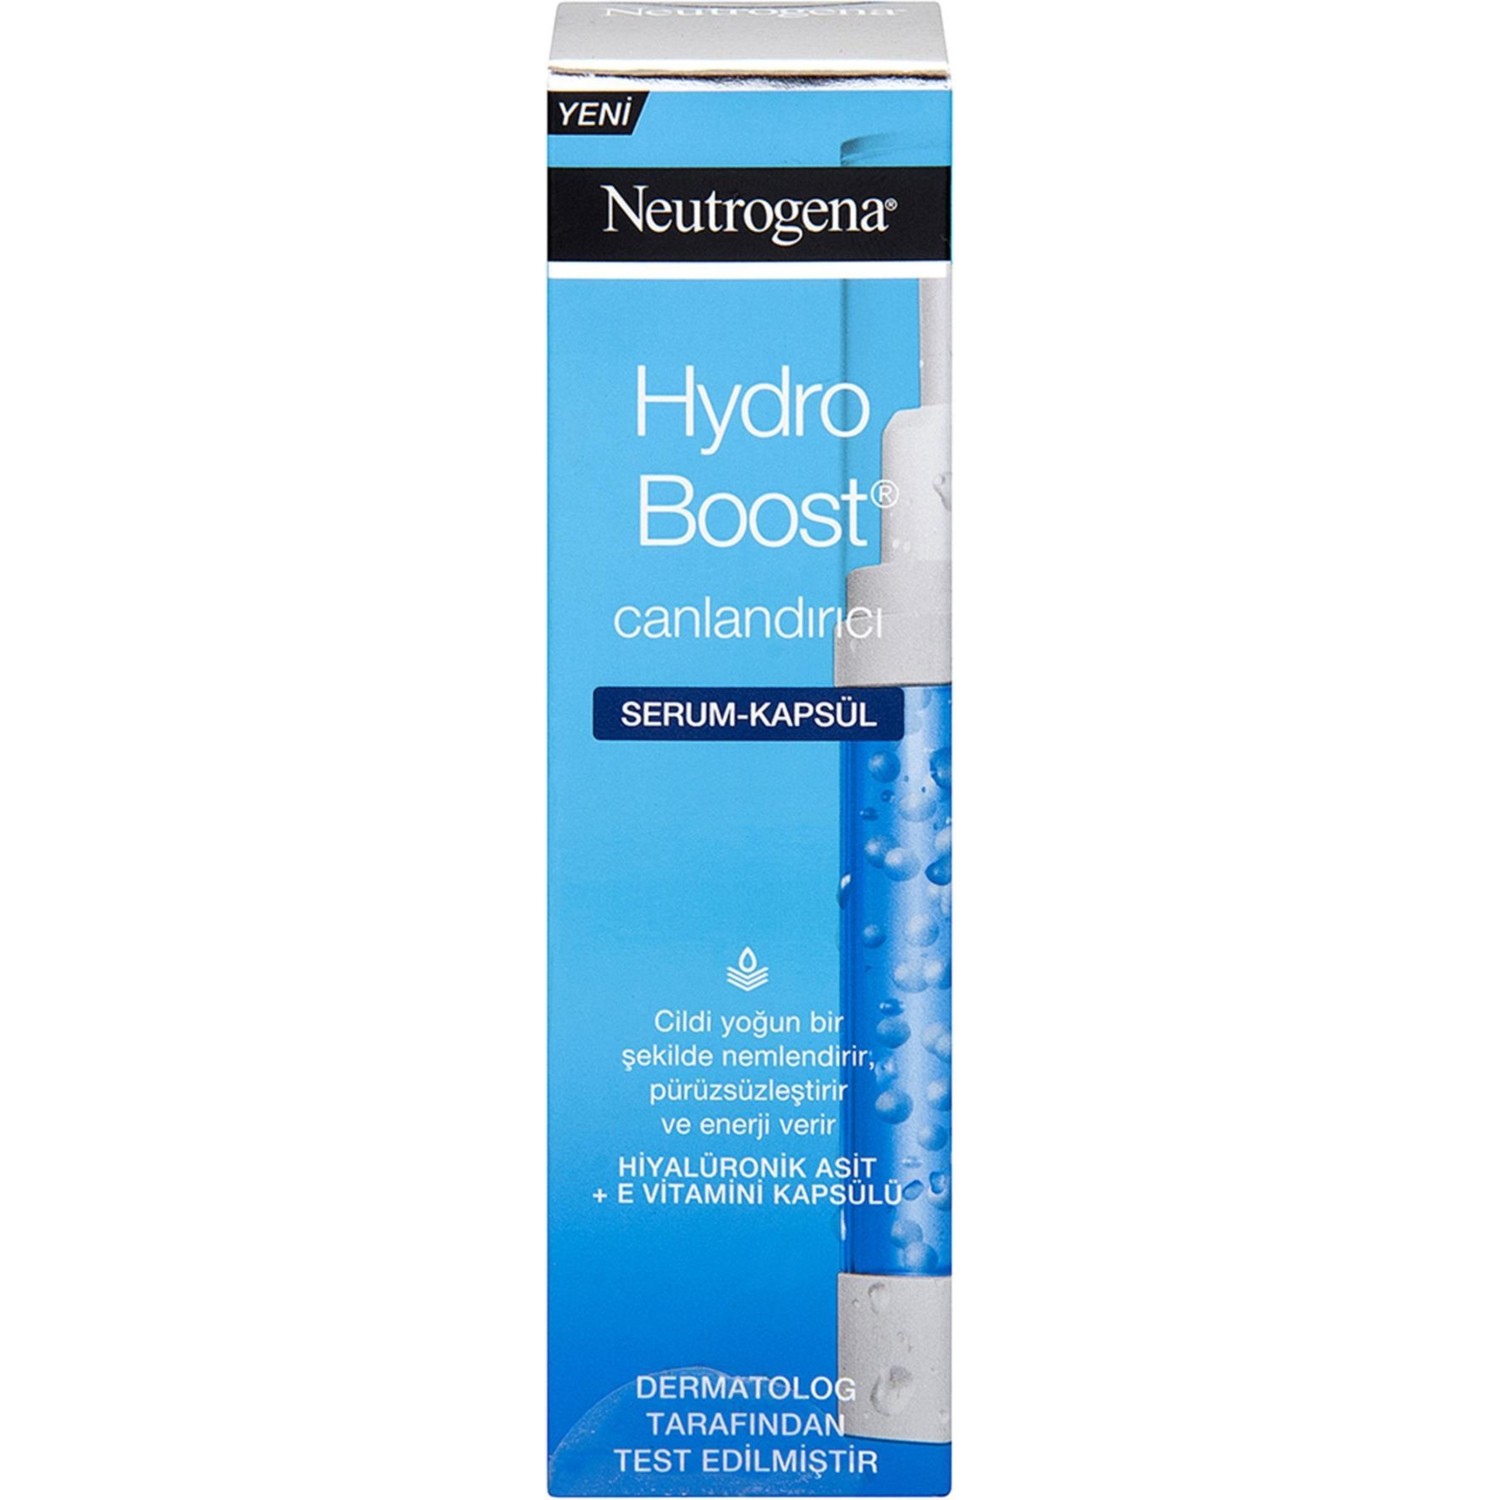 Крем для тела Neutrogena Hydro Boost восстанавливающая, 30 мл крем для тела neutrogena hydro boost восстанавливающая 30 мл